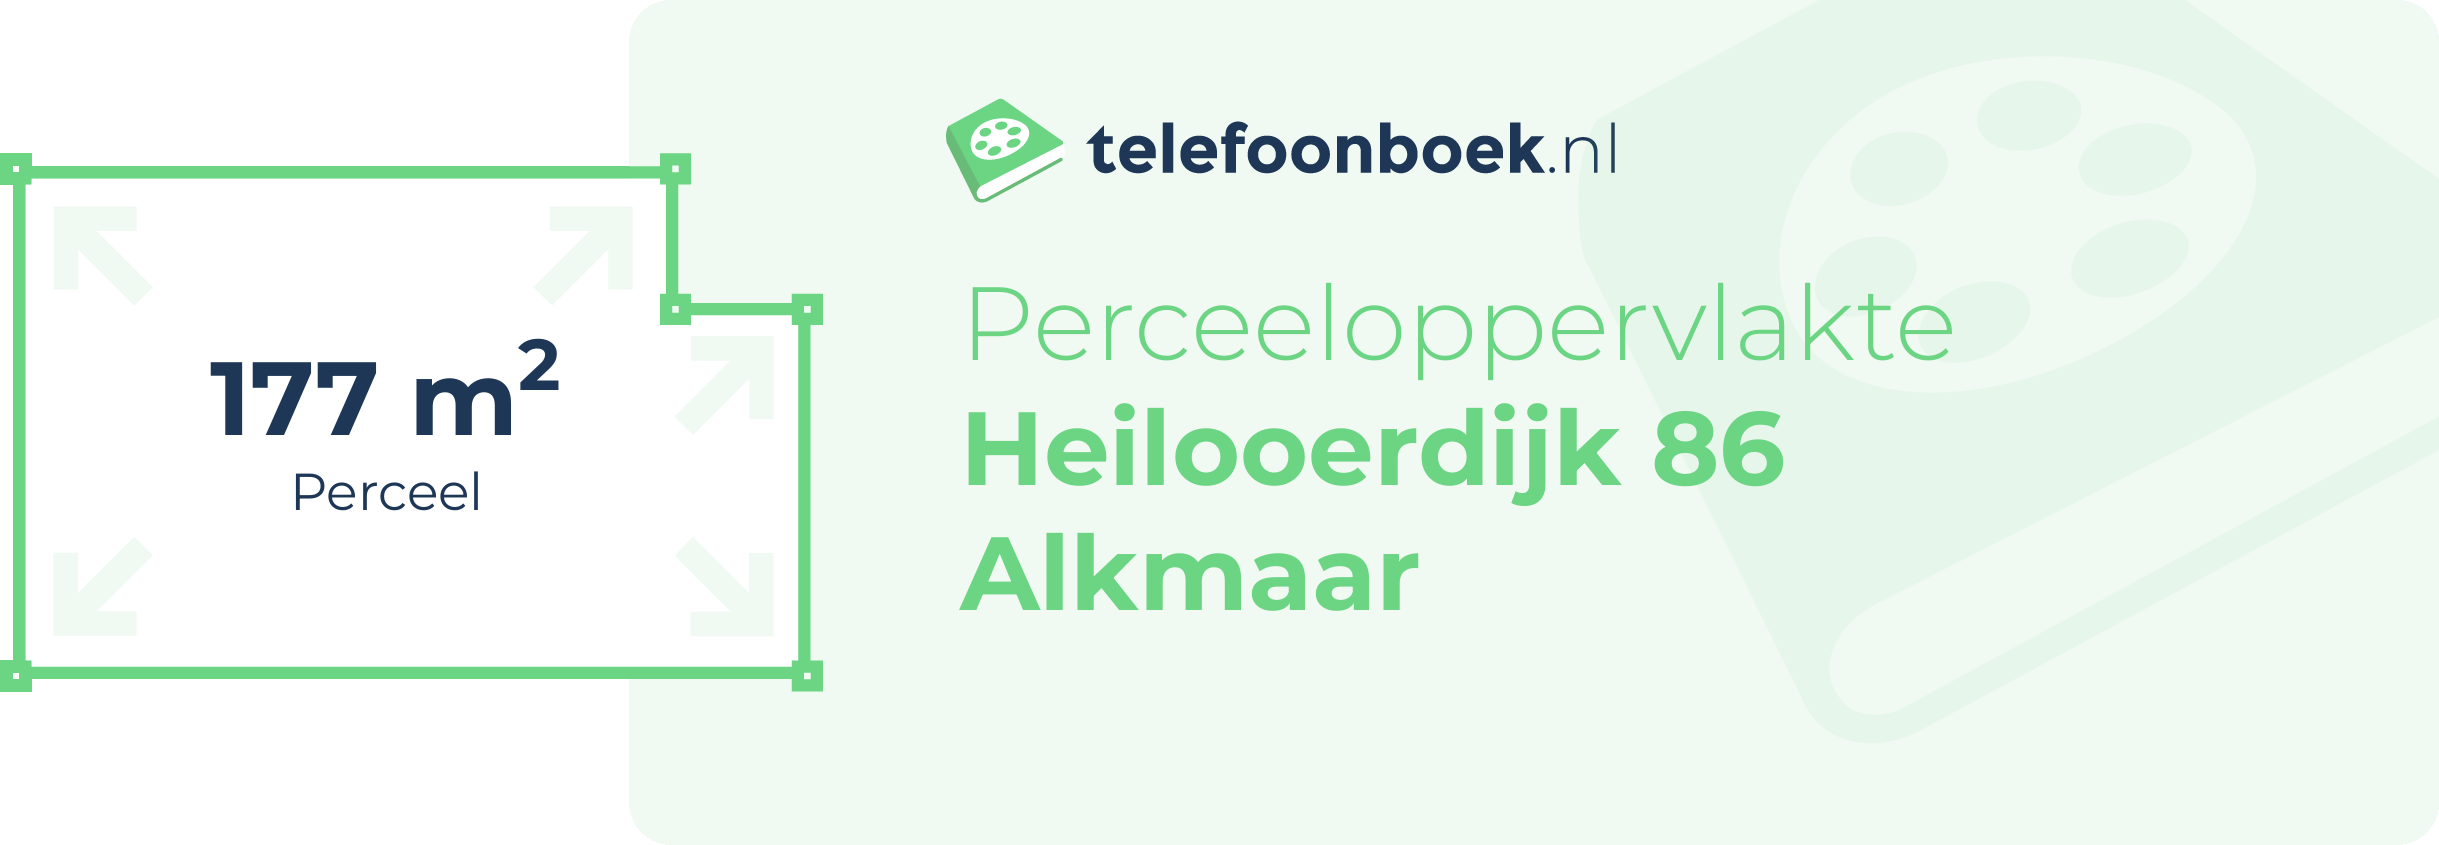 Perceeloppervlakte Heilooerdijk 86 Alkmaar